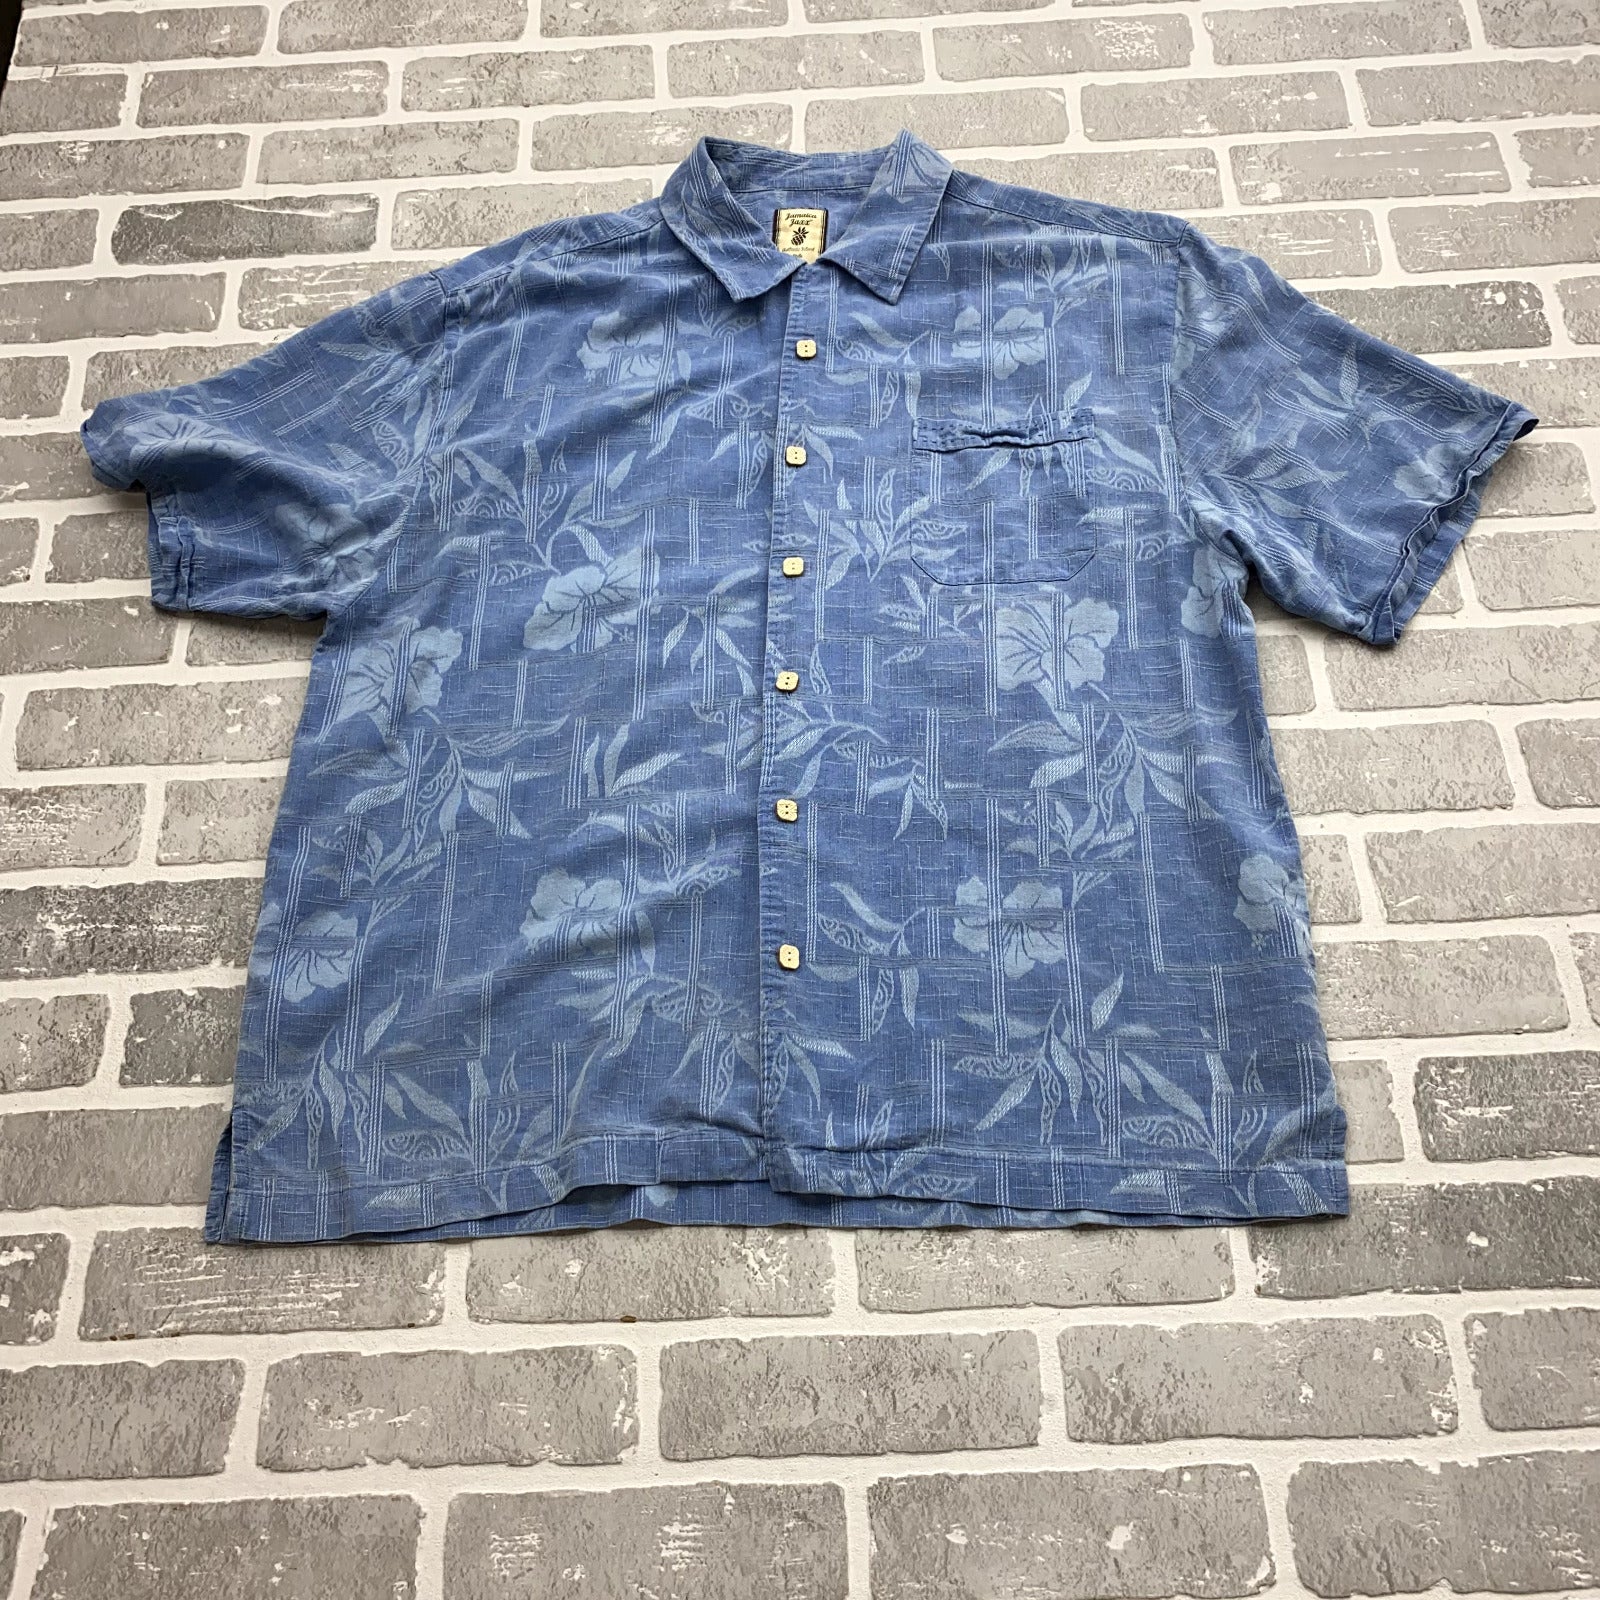 Jamaica Jaxx Blue Hawaiian Floral Short Sleeve Button Up Silk Shirt Men Size XL